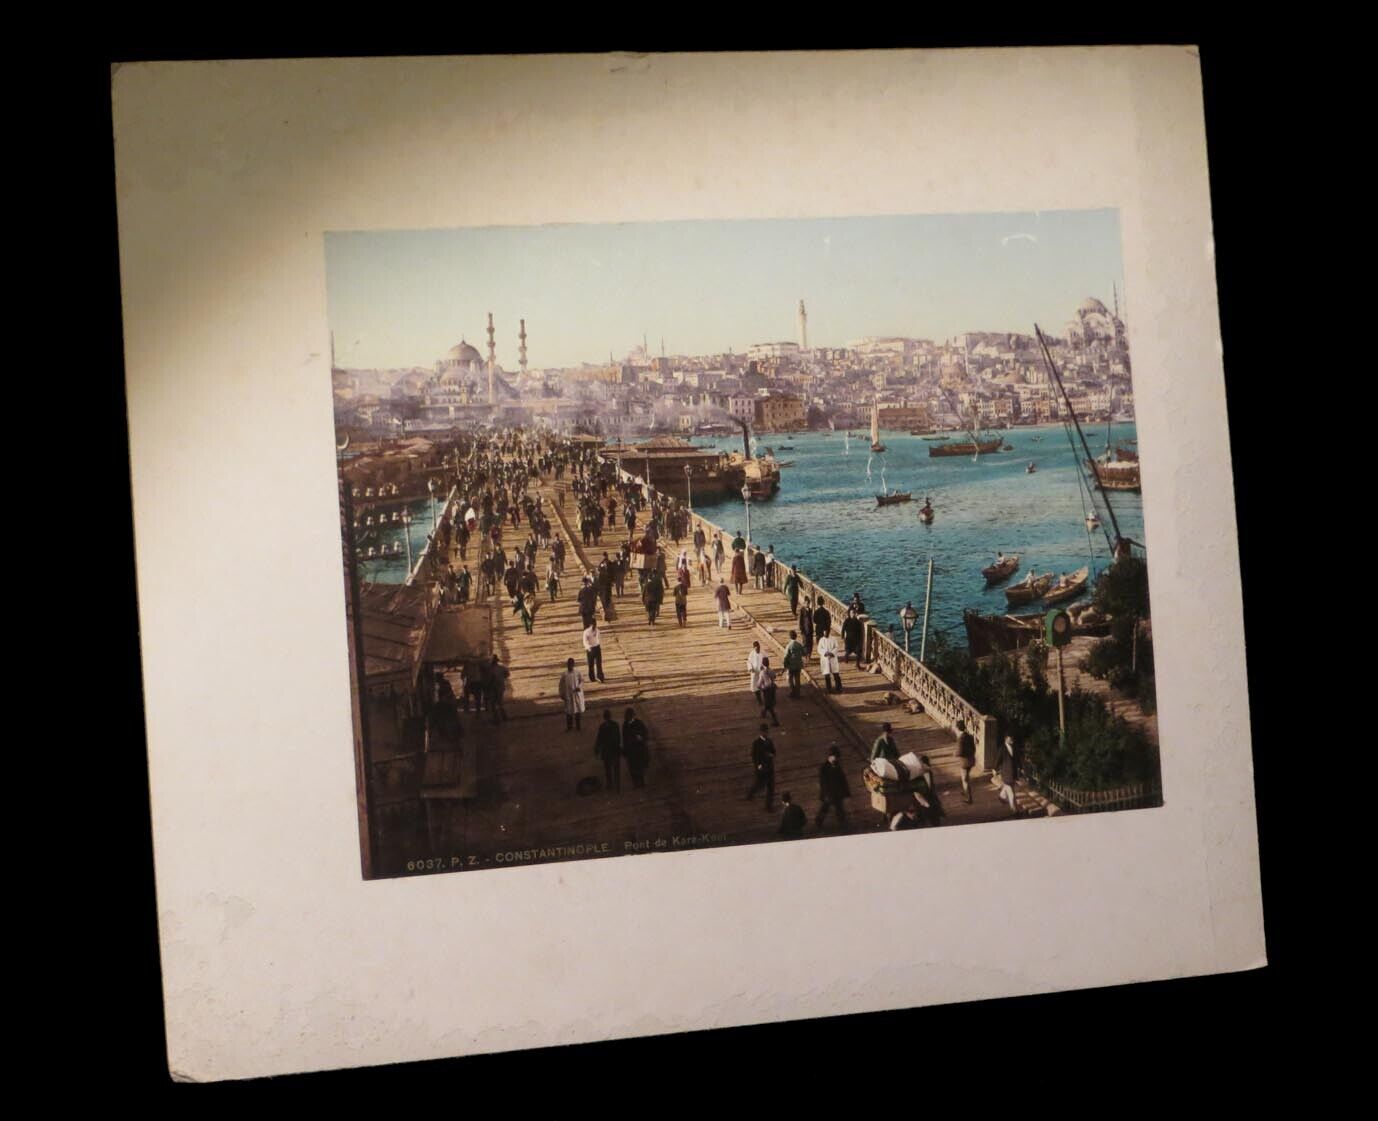 PHOTOCHROME TURKY TURKY TURKEY ISTANBUL PHOTO] C. 1890.